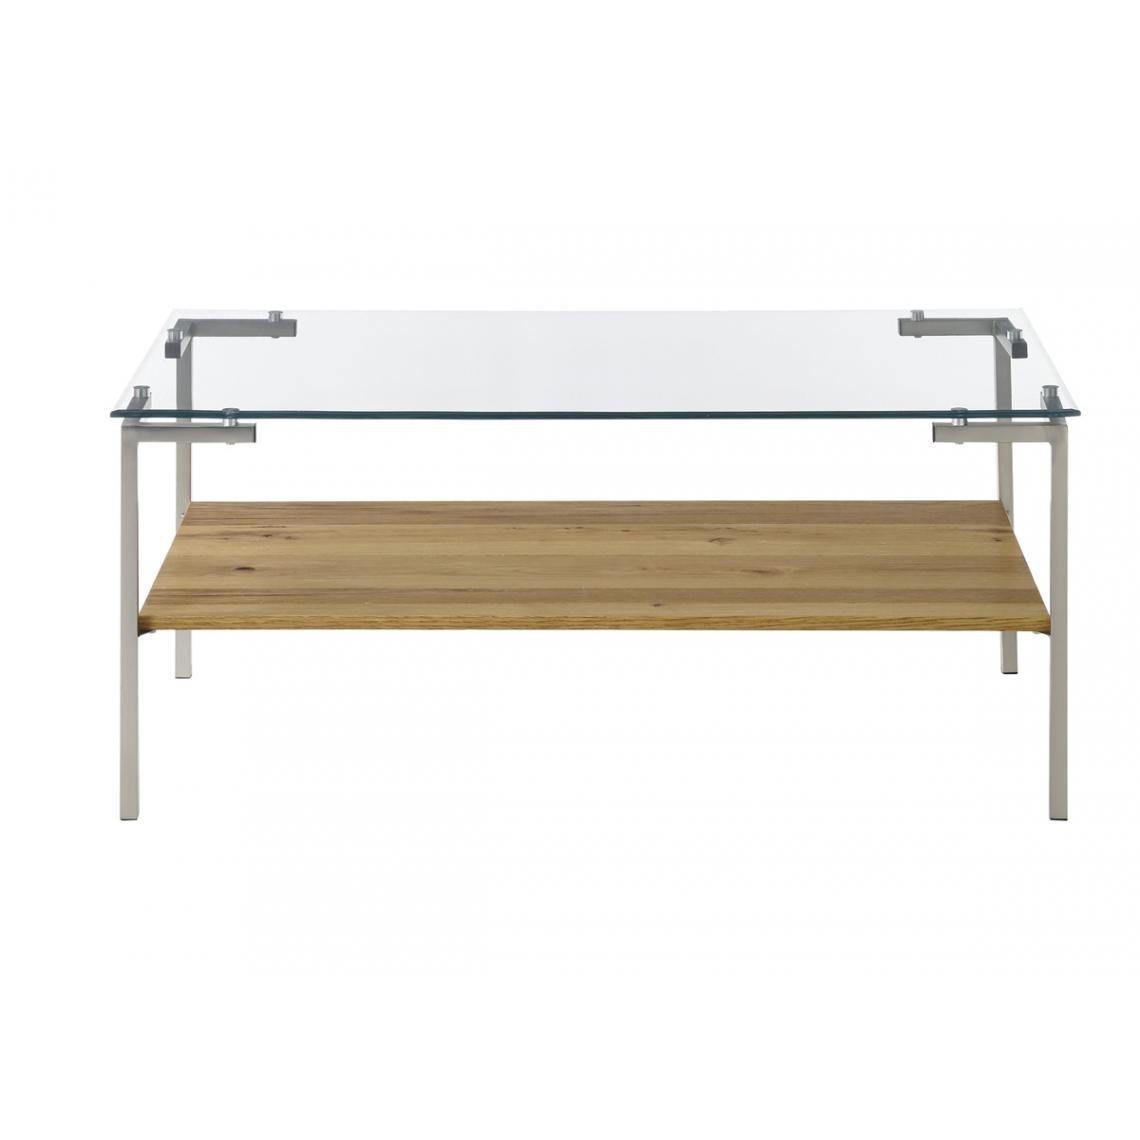 Pegane - Table basse coloris chêne en verre / bois - Longueur 110 x hauteur 46 x profondeur 60 cm - Tables basses